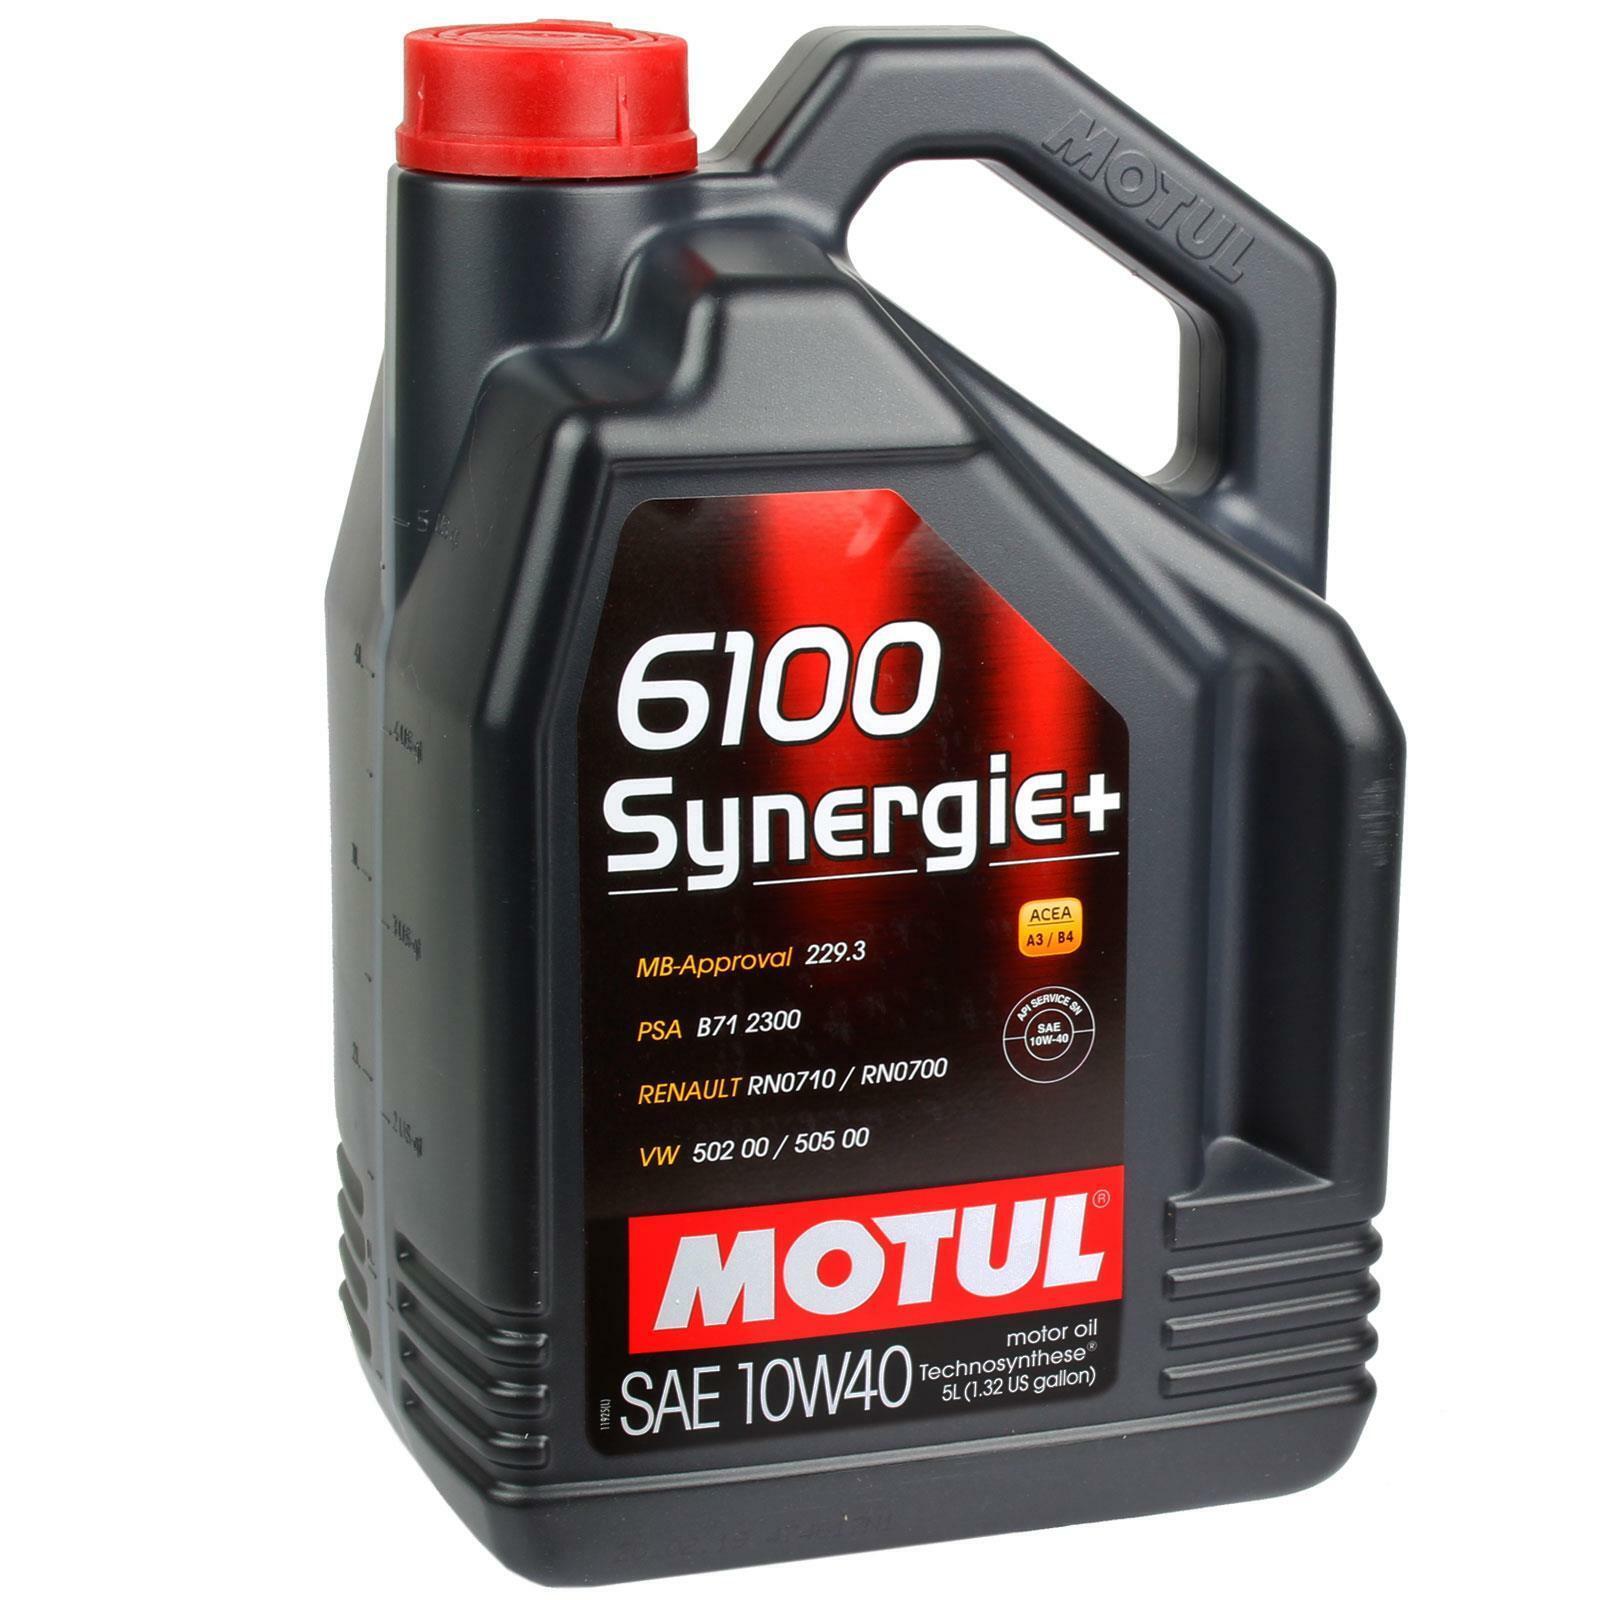 Olio motore Motul 10W-40 6100 Synergie+ (confezione da 5 Litri)